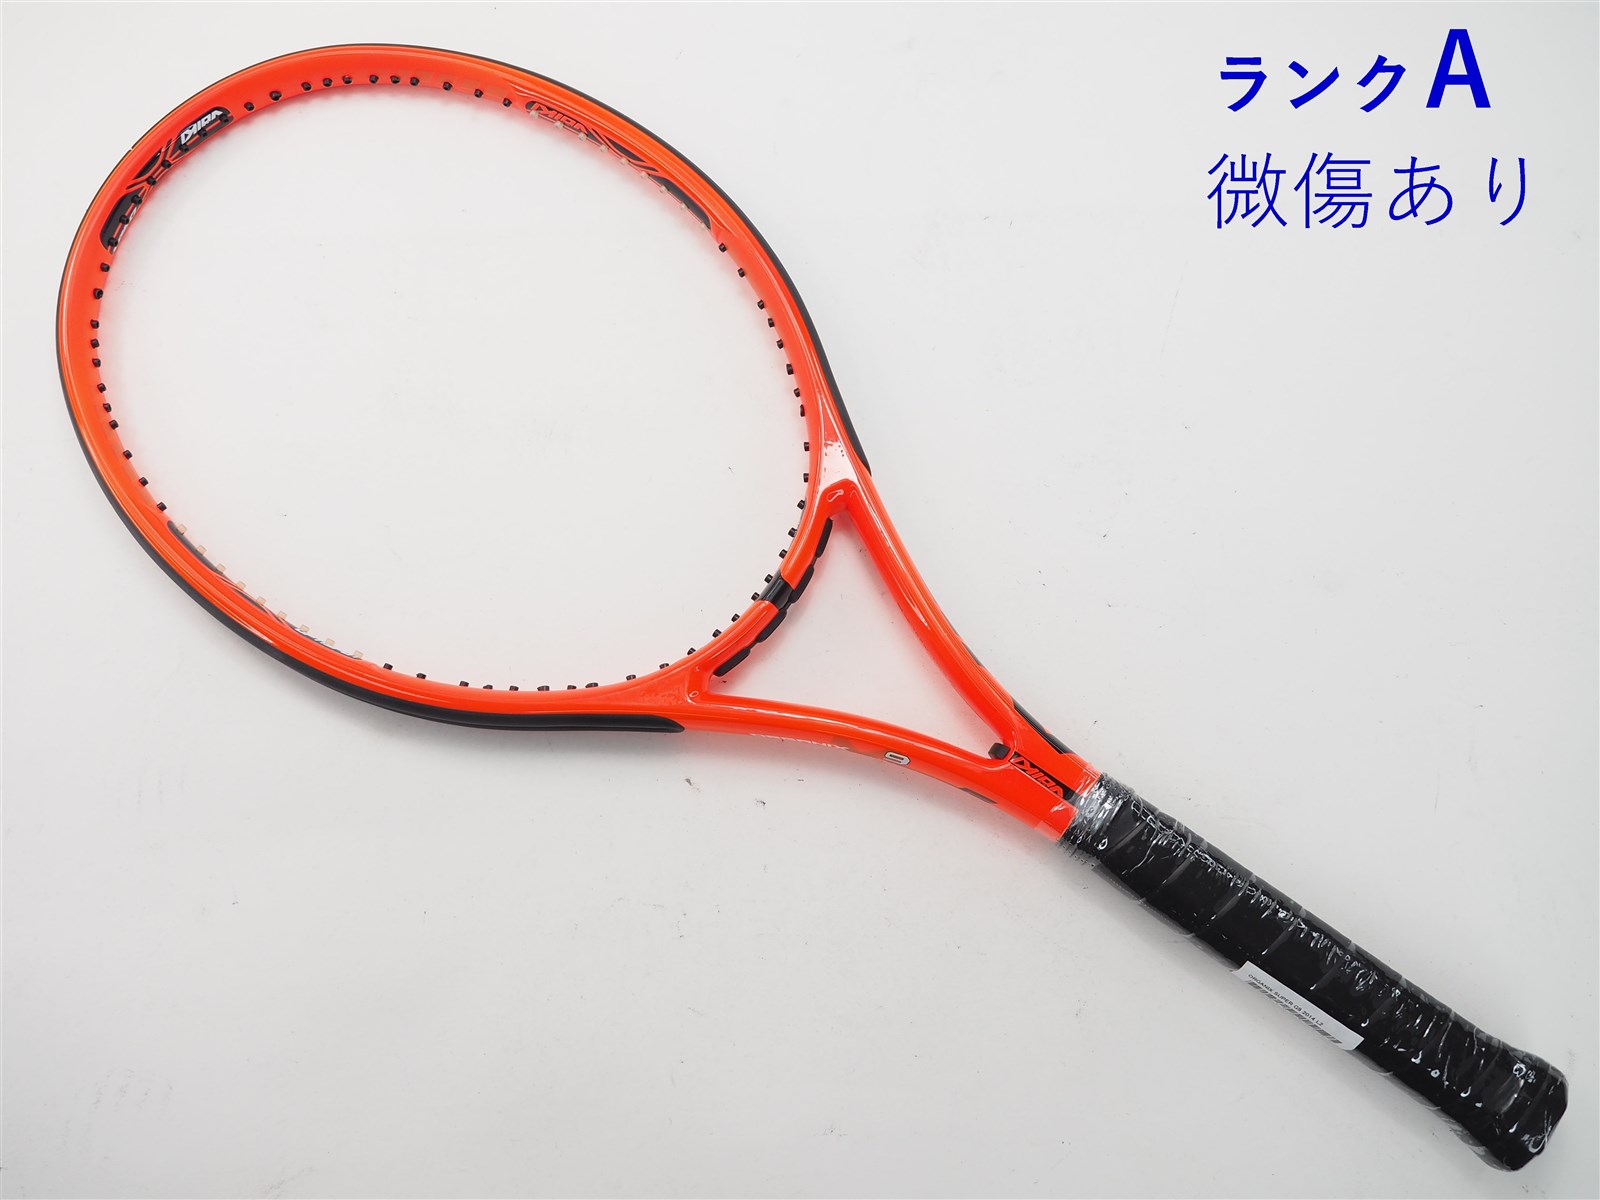 テニスラケット フォルクル オーガニクス スーパー G9 2014年モデル (L2)VOLKL ORGANIX SUPER G9 2014